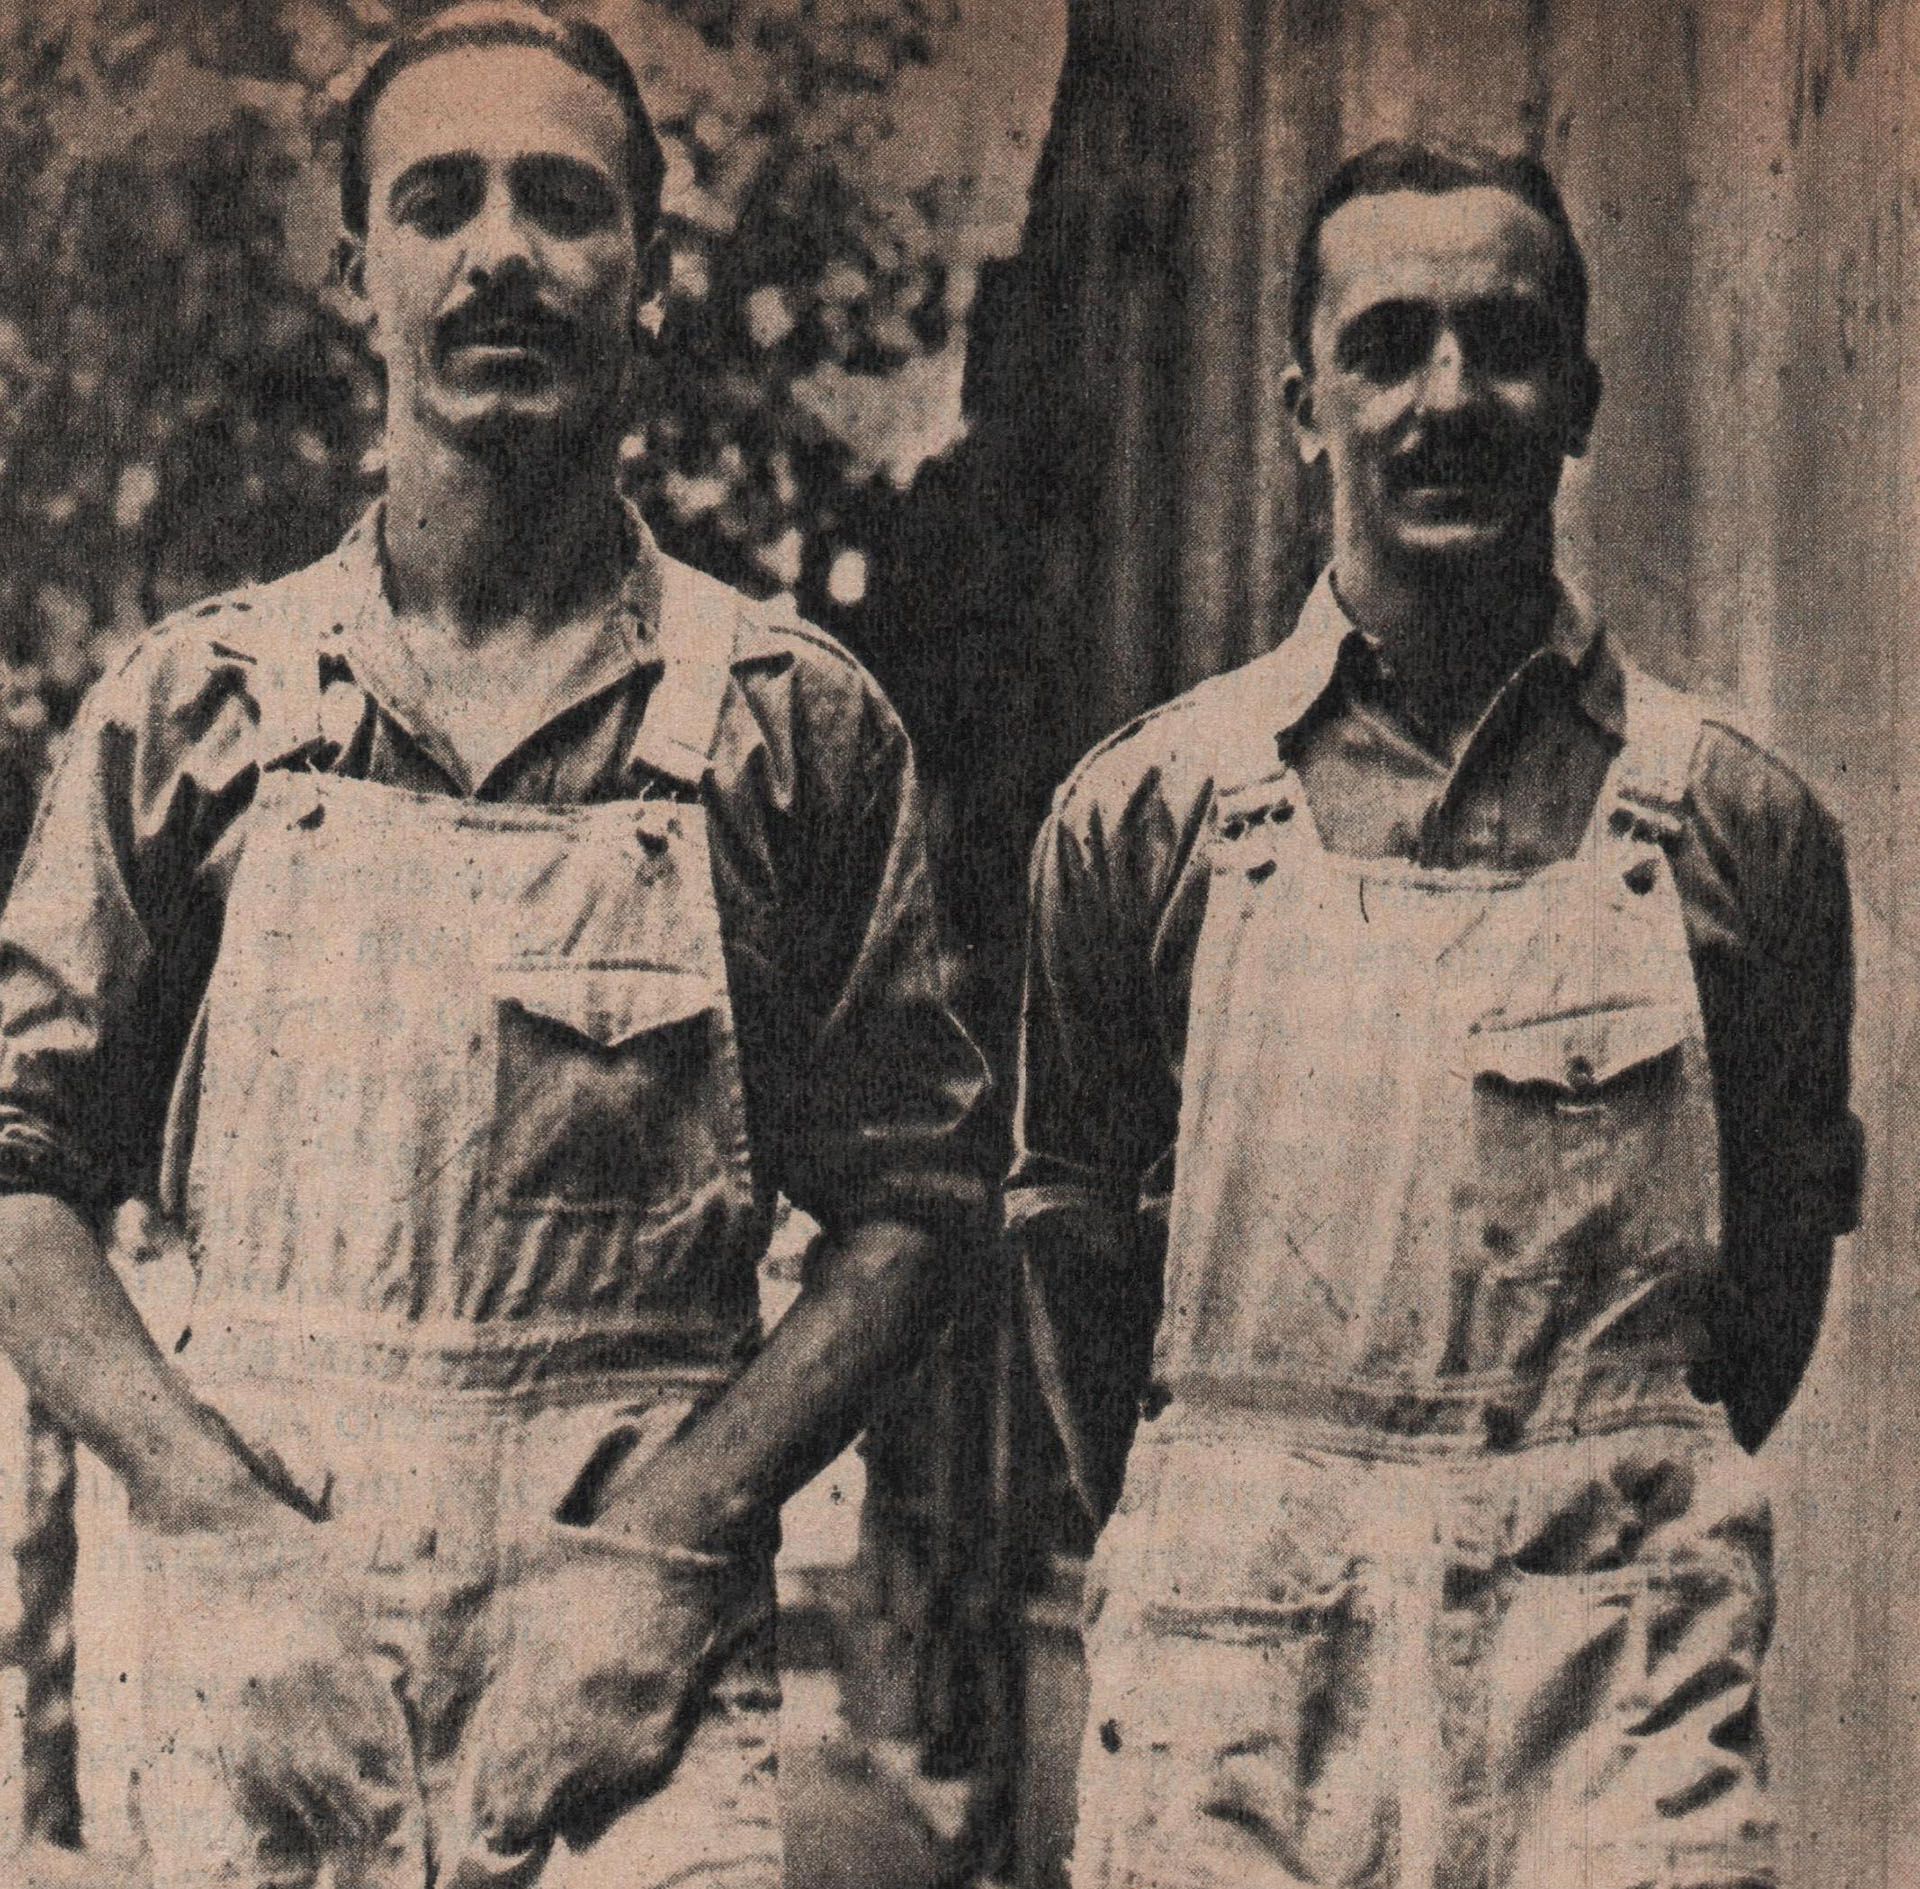 Los hermanos Gálvez: Oscar (der) y Juan (izq.). Crédito: Archivo CORSA.